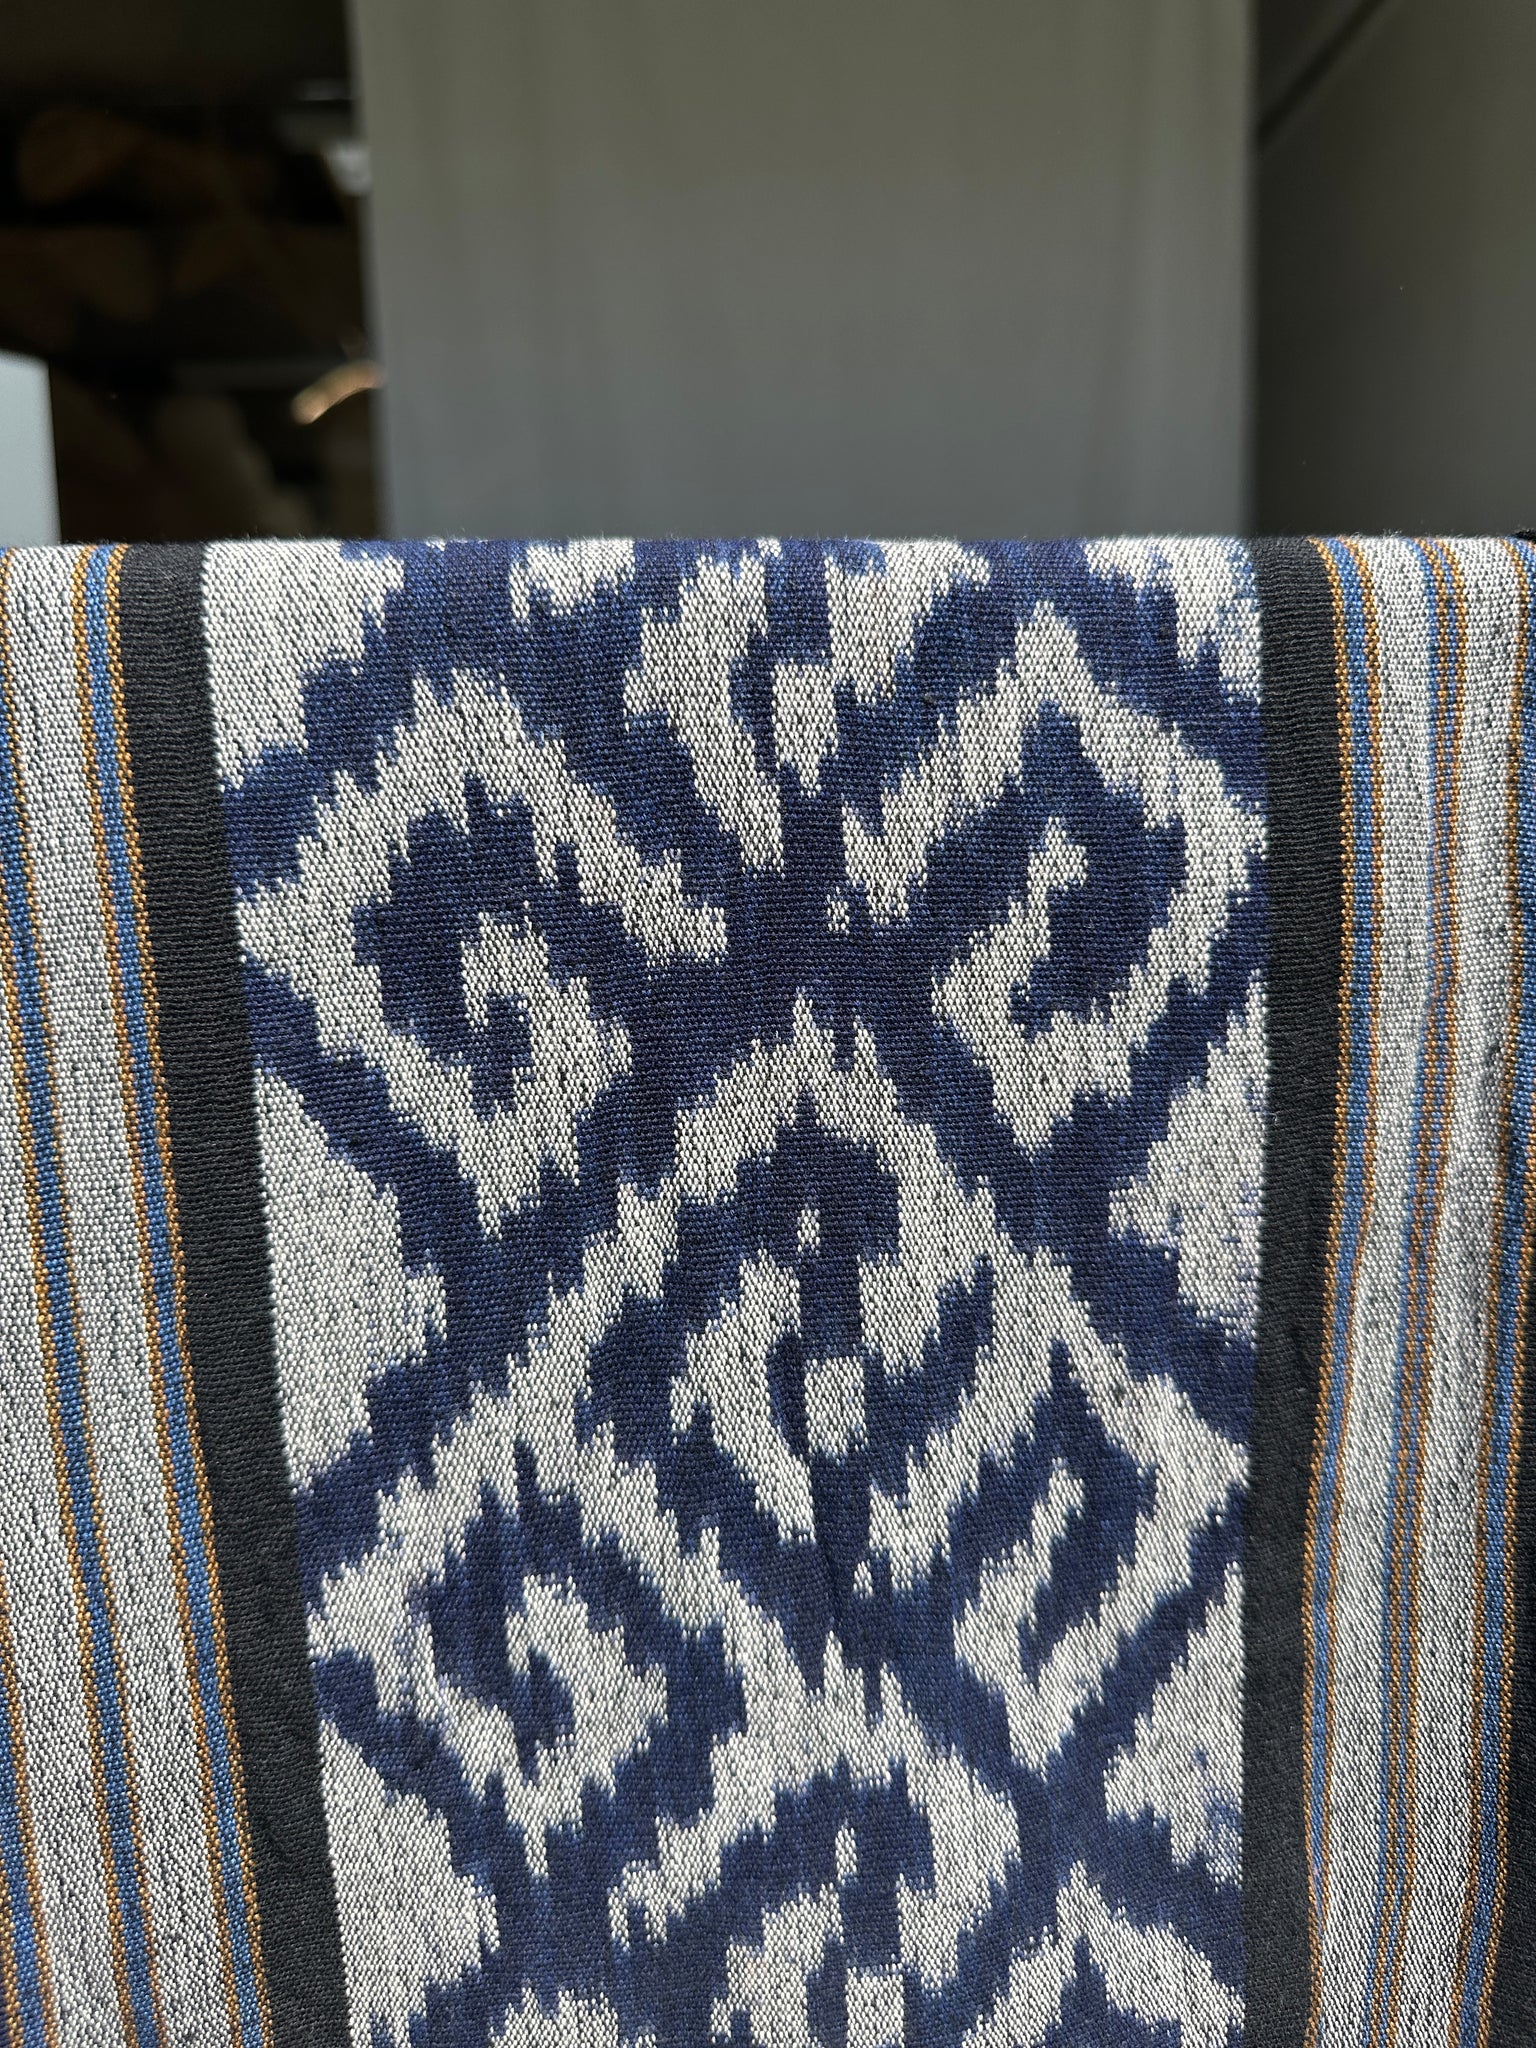 Grand ikat bleu et blanc à motif de losange 2m35x1m15